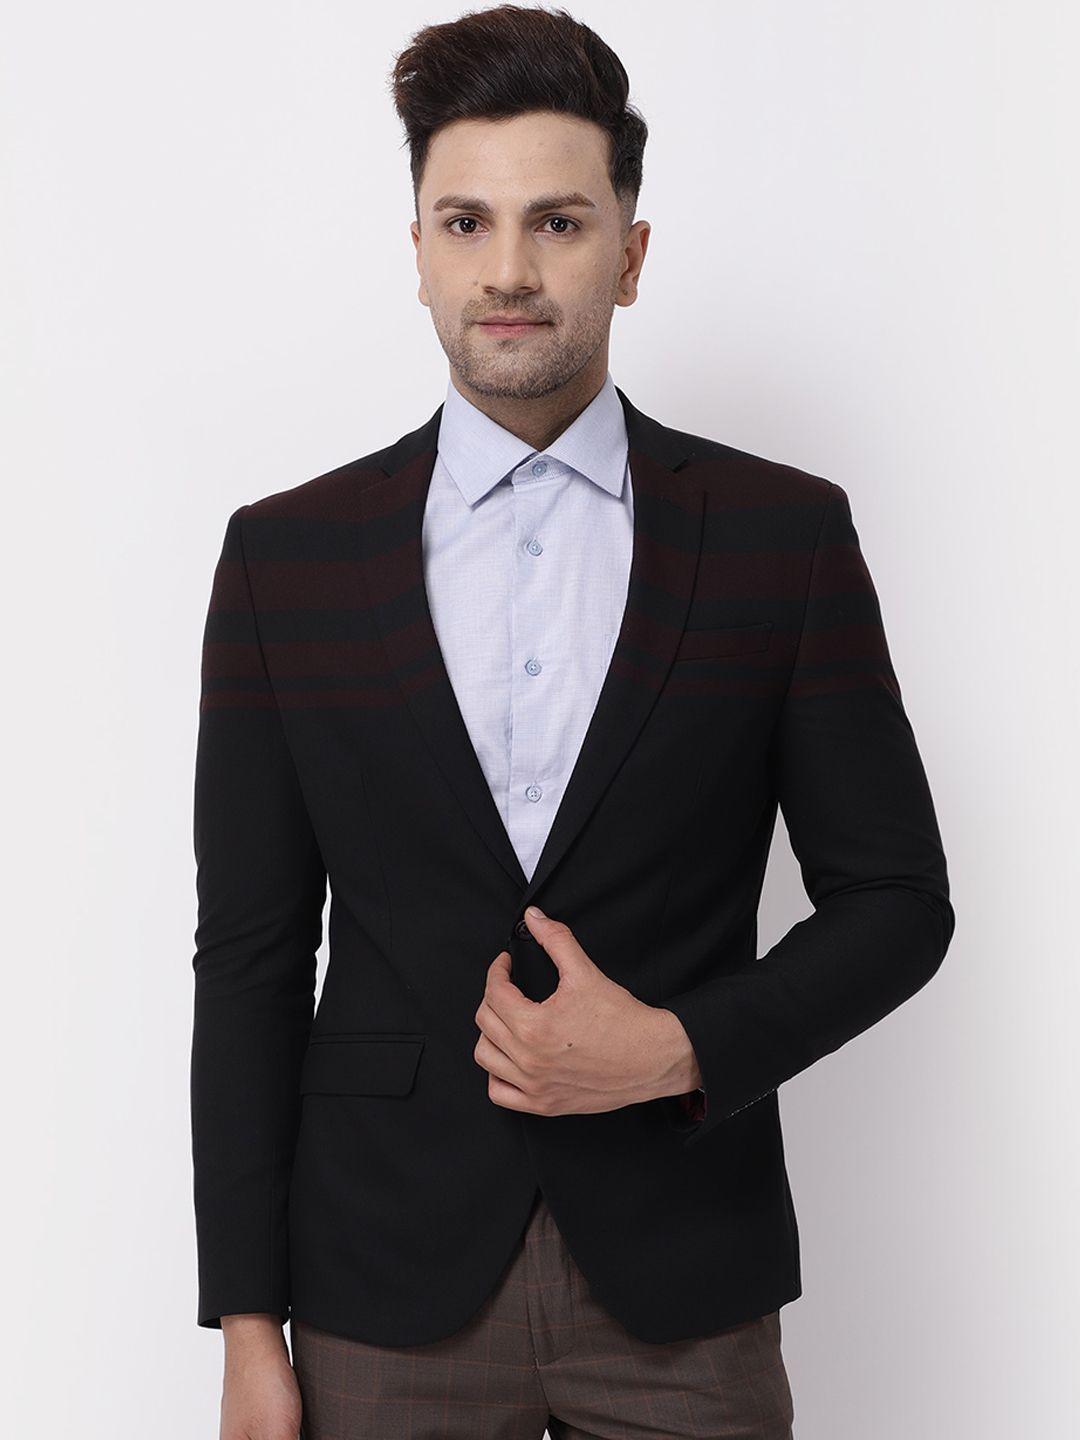 blackberrys-men-black-maroon-striped-formal-blazer